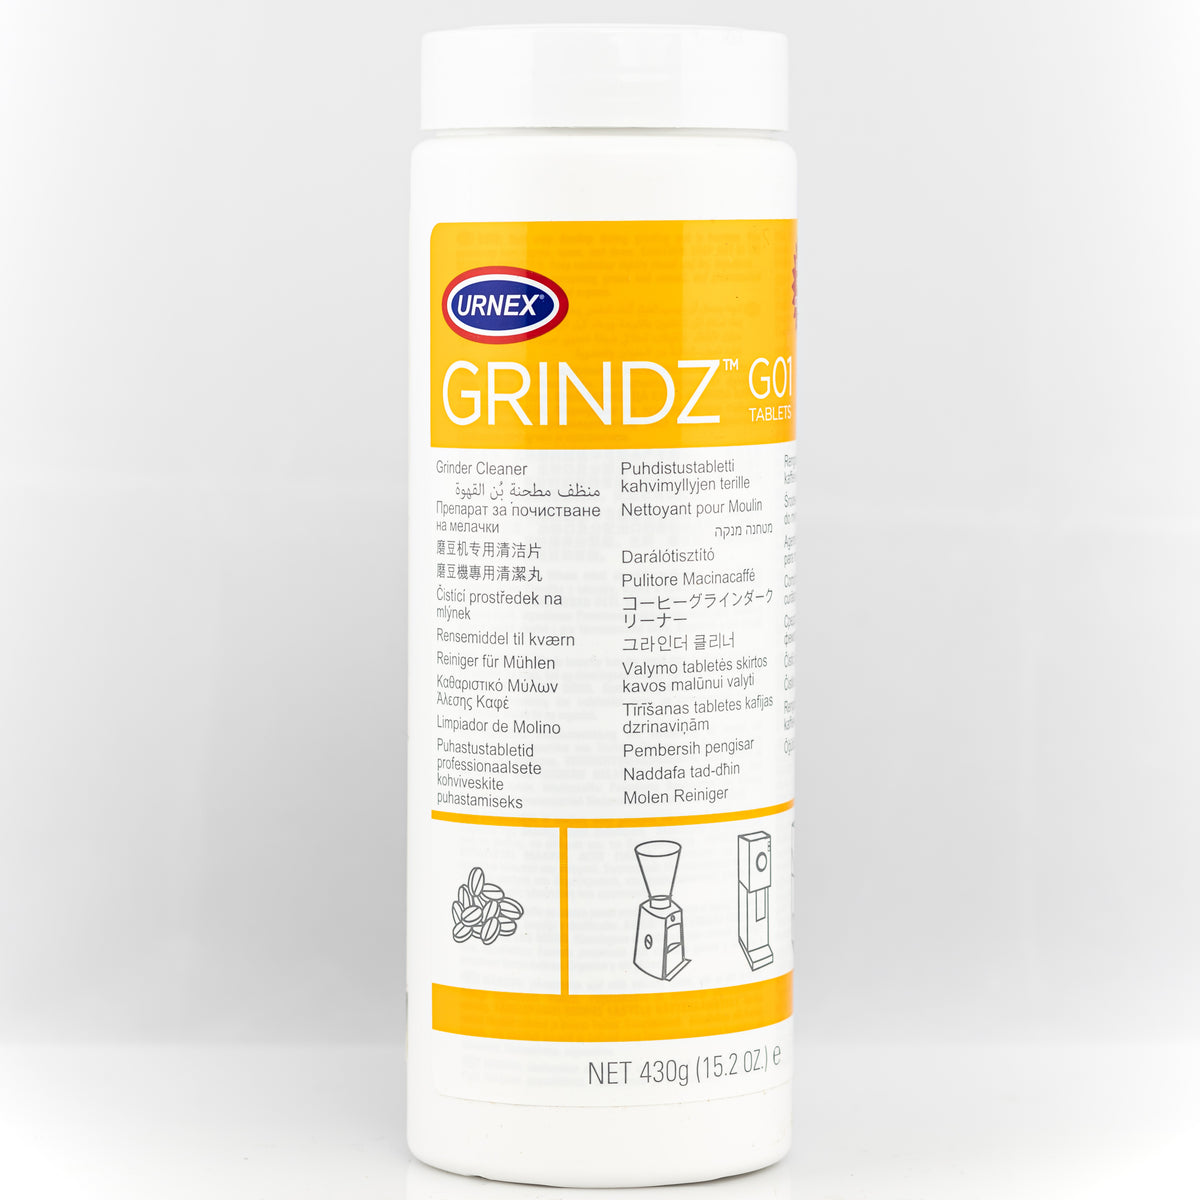 Grindz – Vigilante Coffee Company